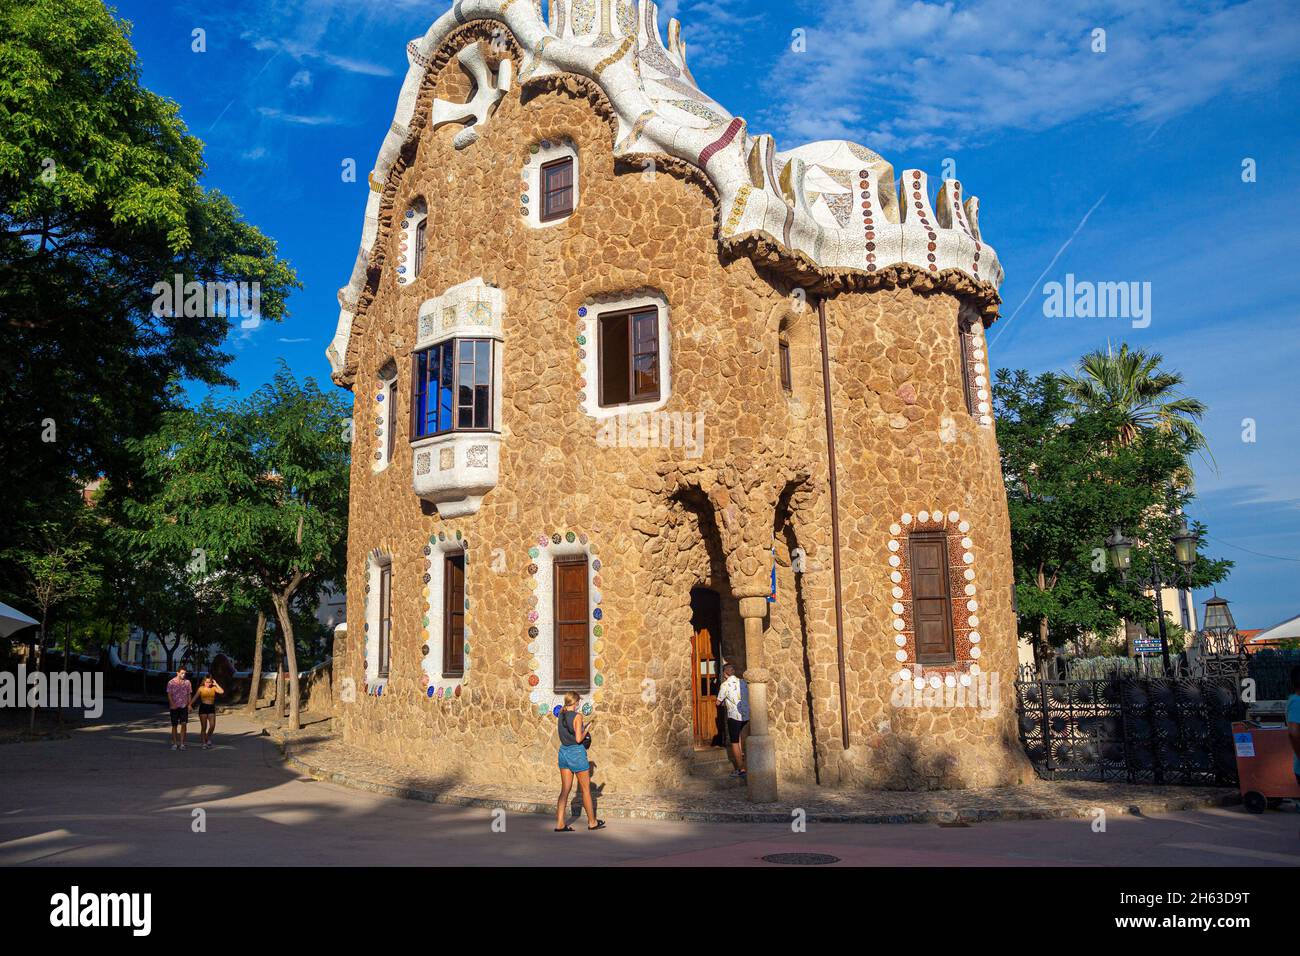 il parco artistico guell di antoni gaudí a barcellona, in spagna, è stato costruito tra il 1900 e il 1914 ed è una famosa attrazione turistica. Foto Stock